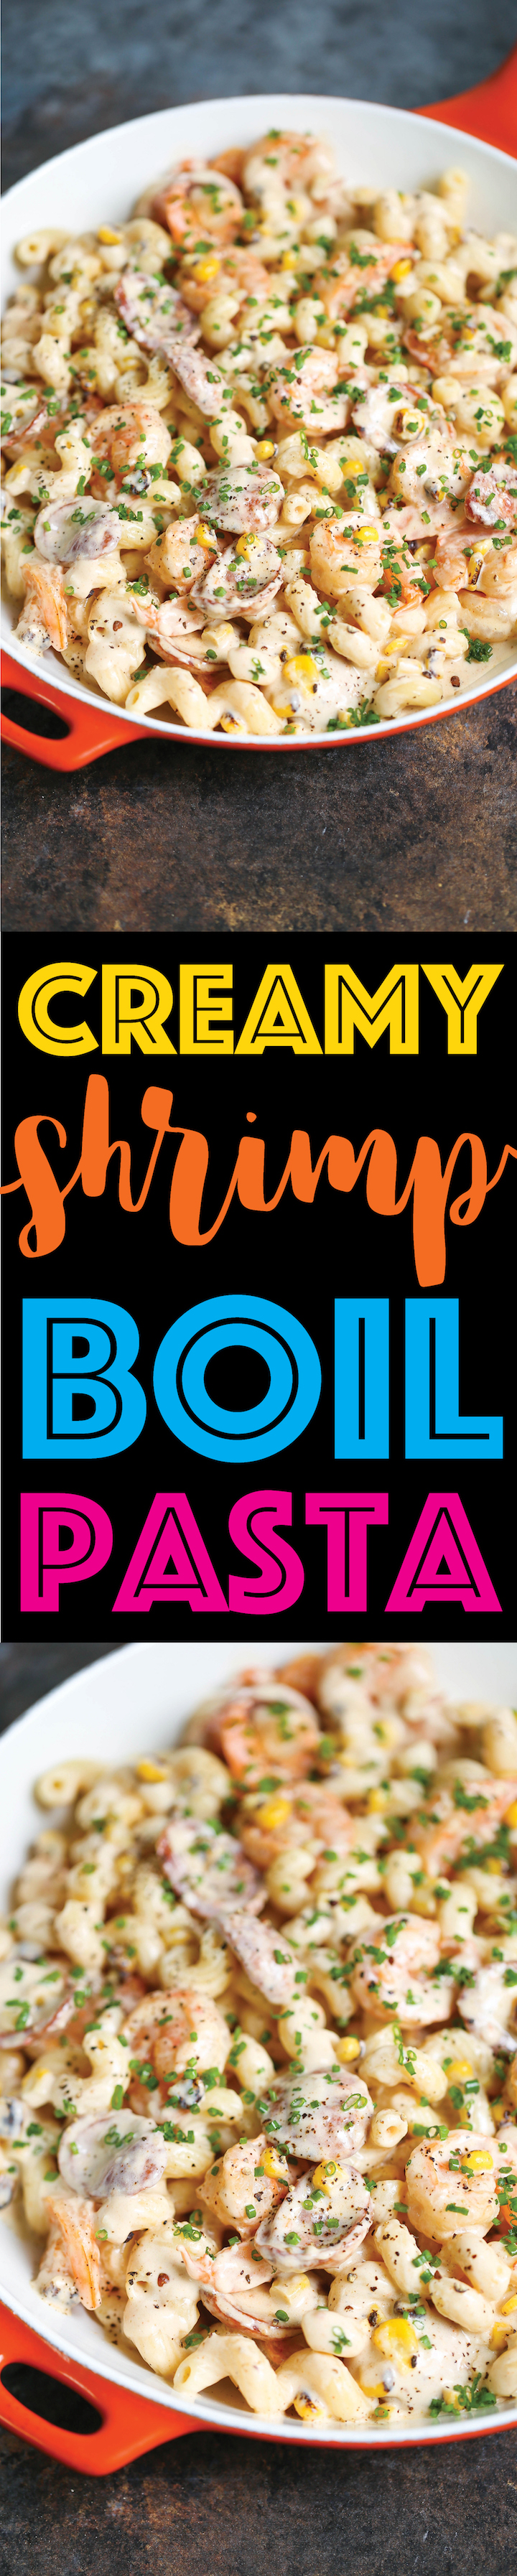 https://s23209.pcdn.co/wp-content/uploads/2017/06/Creamy-Shrimp-Boil-Pasta.jpg